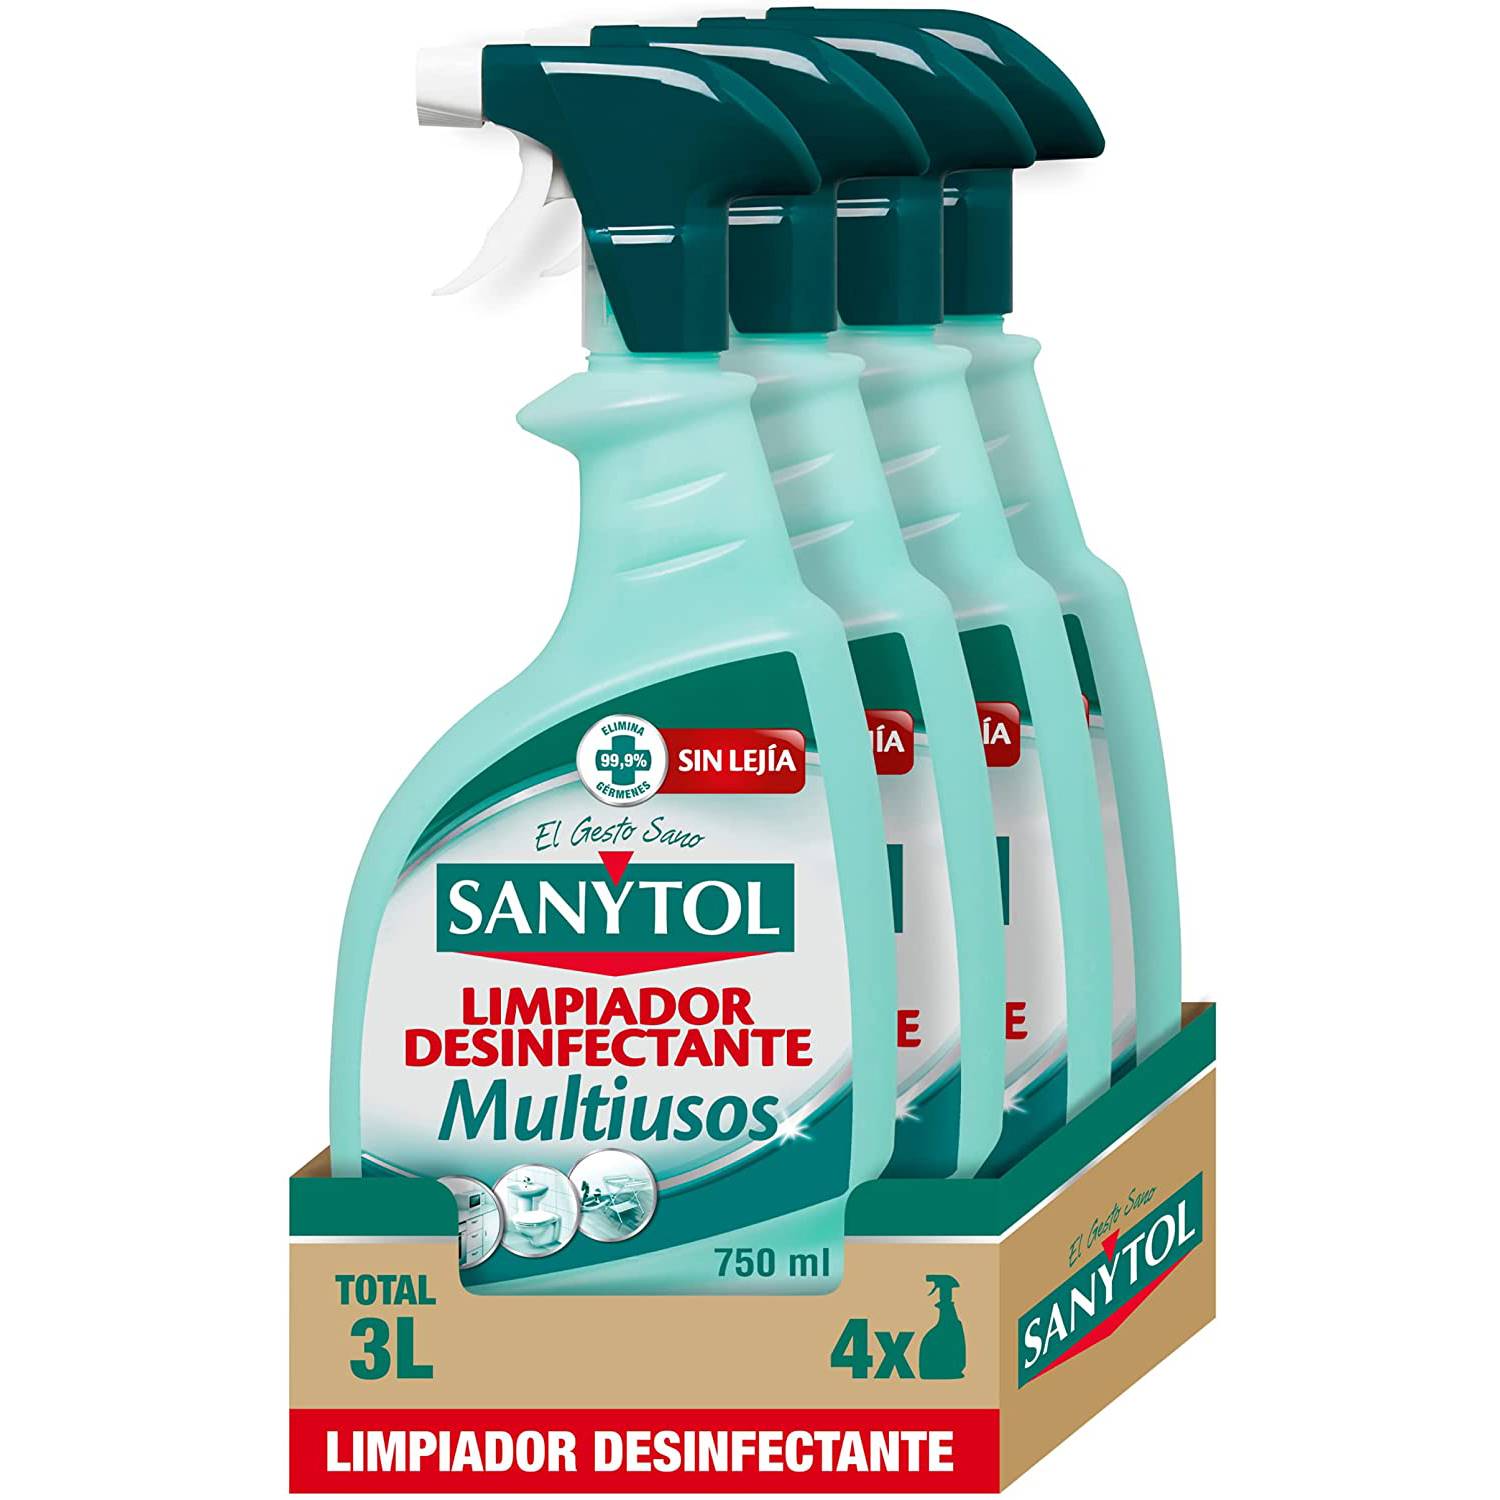 Limpiador y desinfectante Sanytol de Amazon